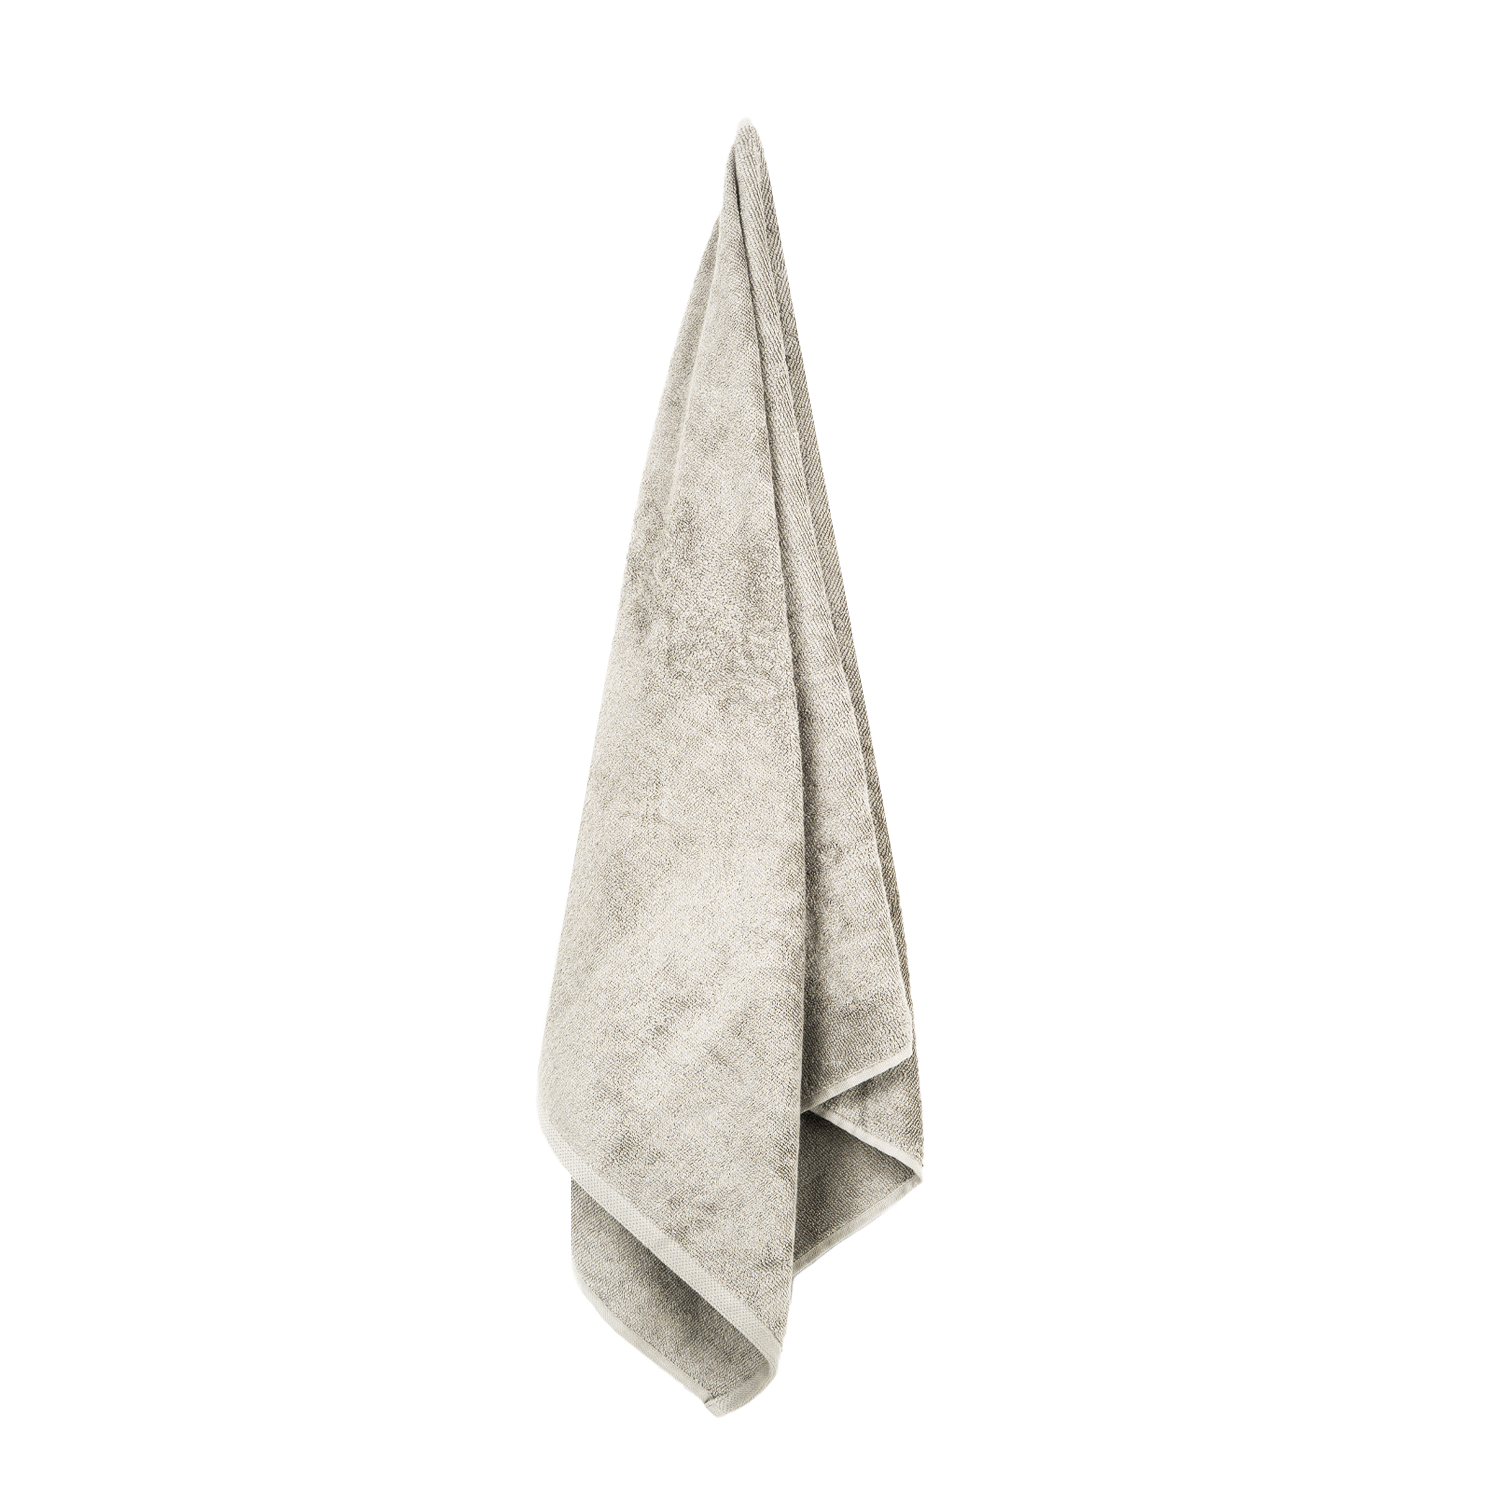 Produktbillede af bambushåndklæde i sand